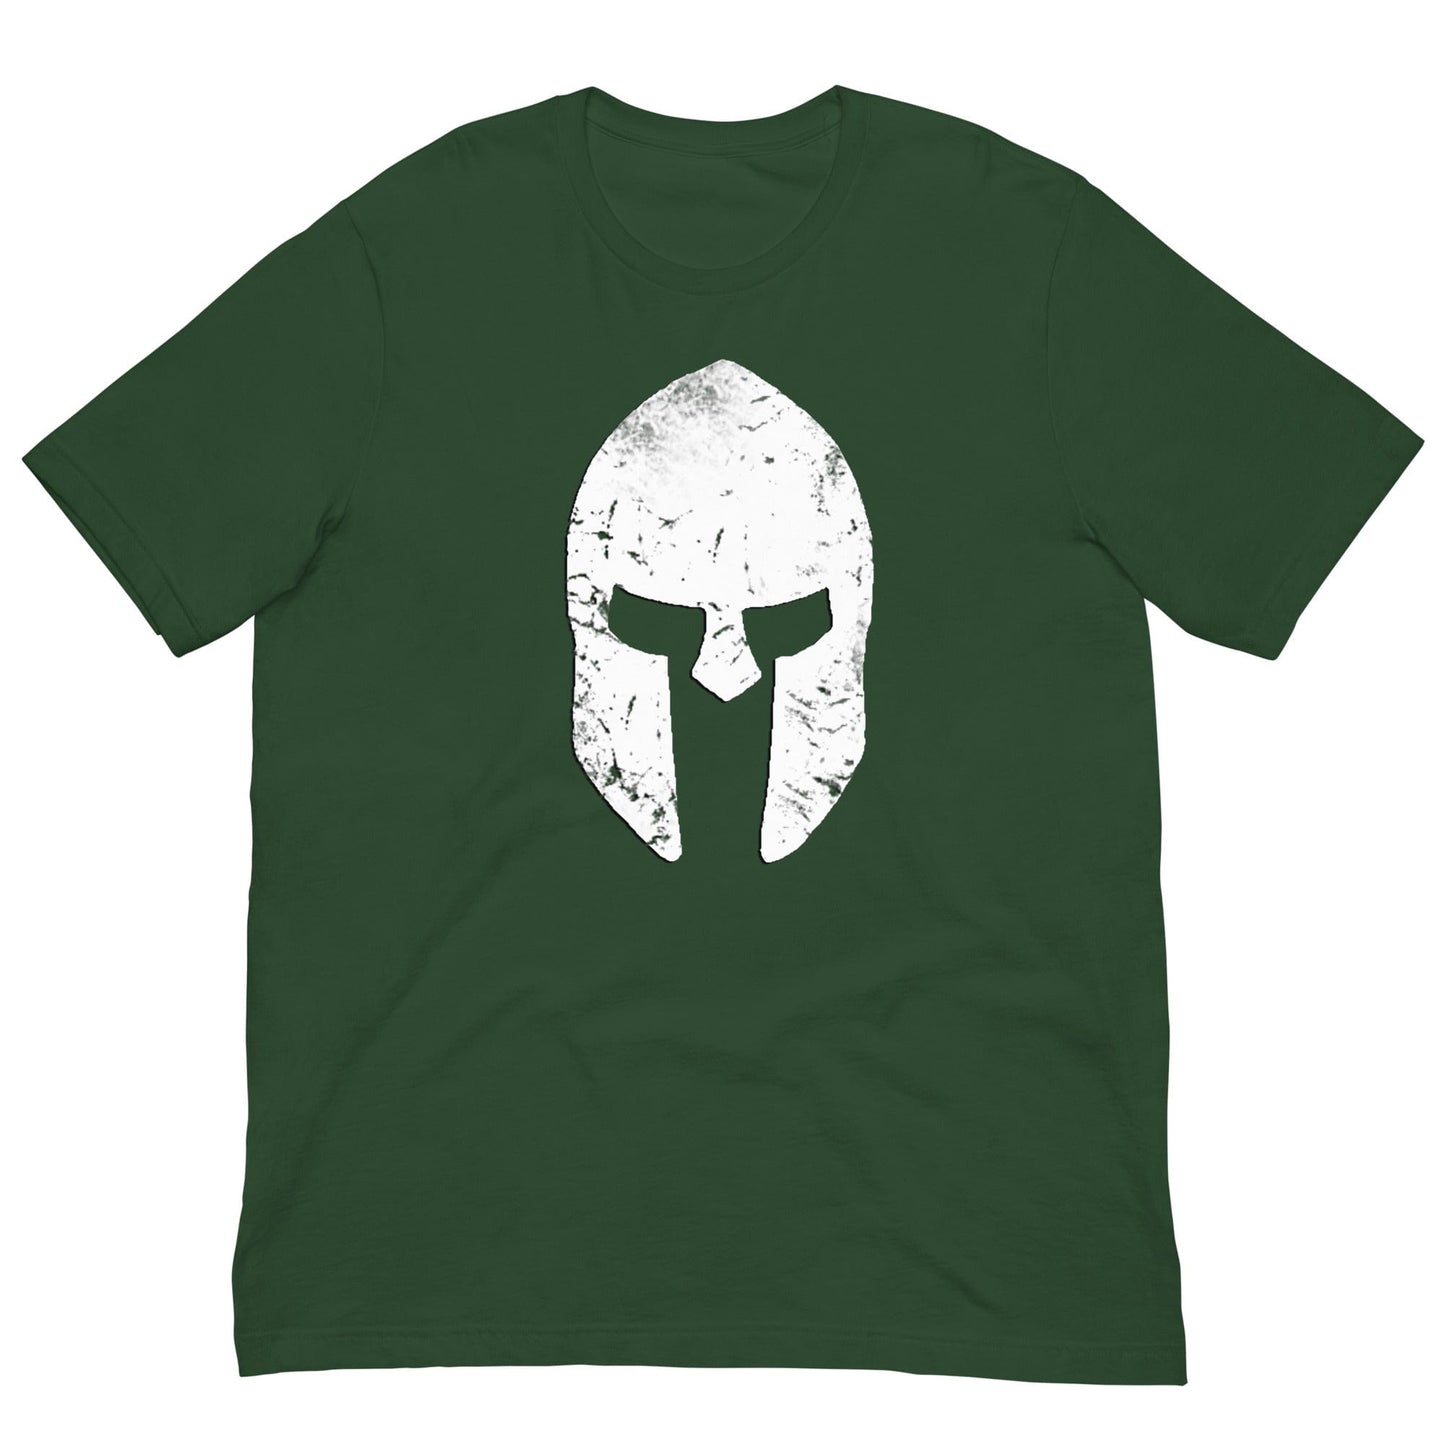 Spartan Helmet T-shirt Forest / S